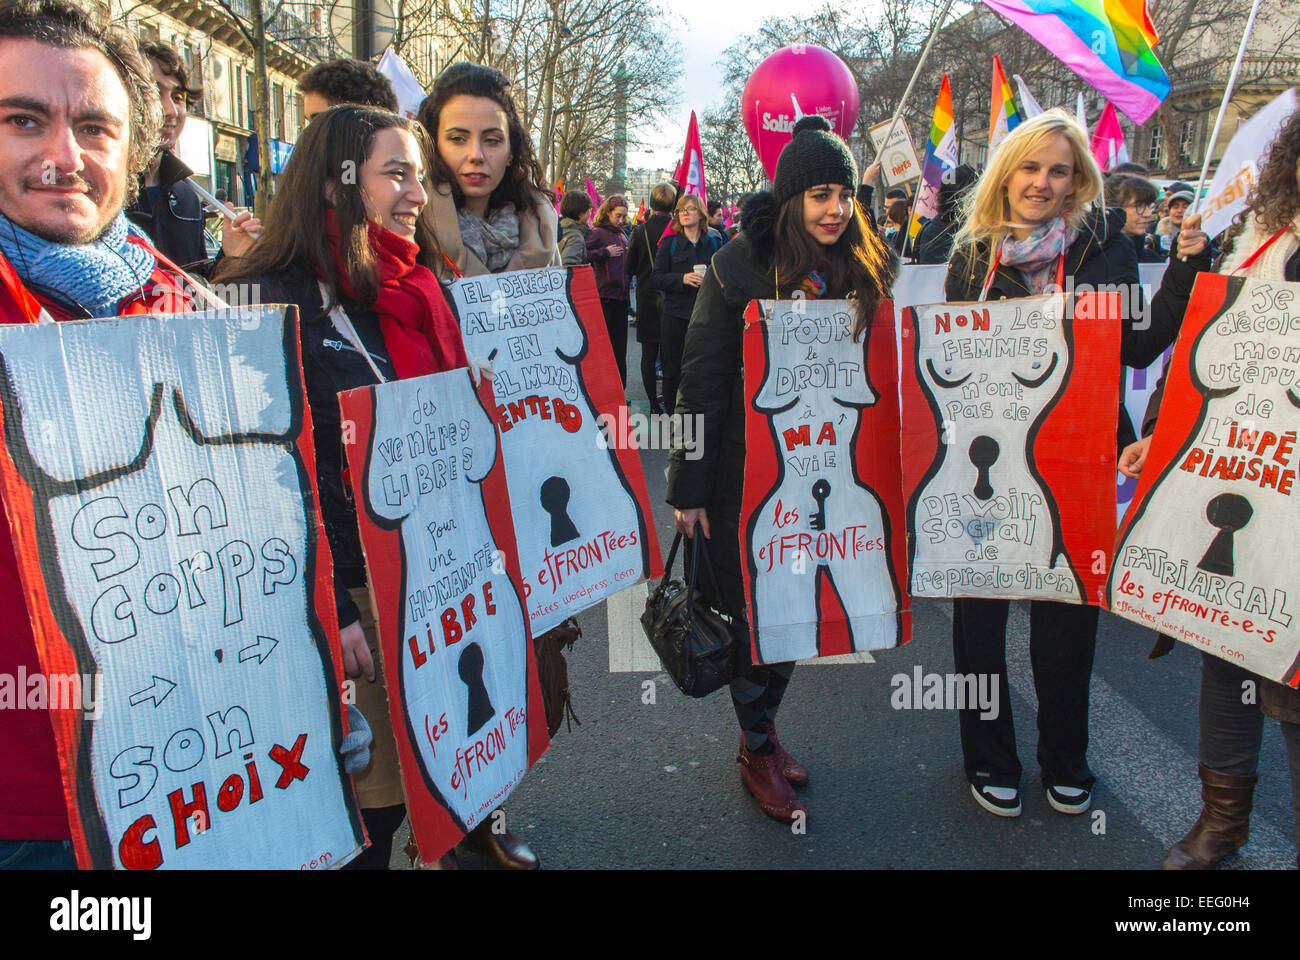 Paris, Frankreich, französische N.G.O.-Gruppe, Feministische Demonstration zu Ehren des Jahrestages der Legalisierung des Abtreibungsgesetzes, Frauen-Rallye, Protestzeichen "mein Körper, meine Wahl", Frauenrechtsbewegung, frauenrechtsmarsch, Proteste für Abtreibung, Empowerment-Zeichen für Frauen Stockfoto